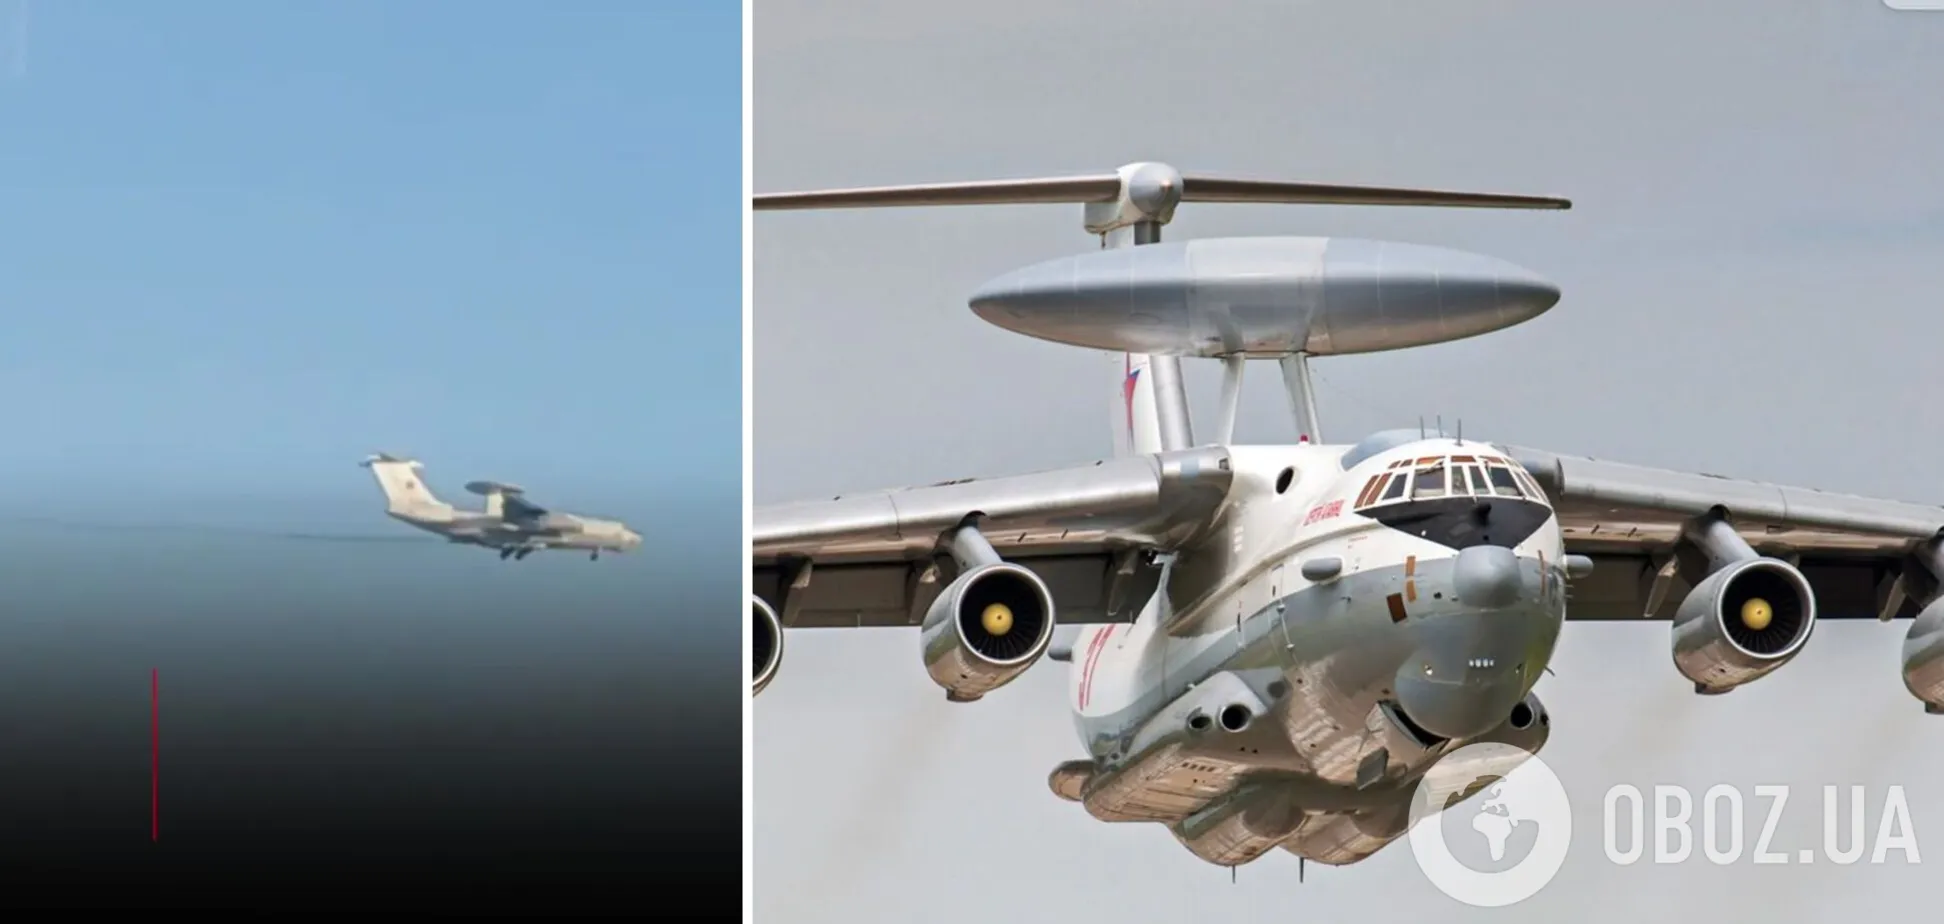 Оккупанты столкнулись с реальностью: какие последствия сбития самолета А-50У для россиян